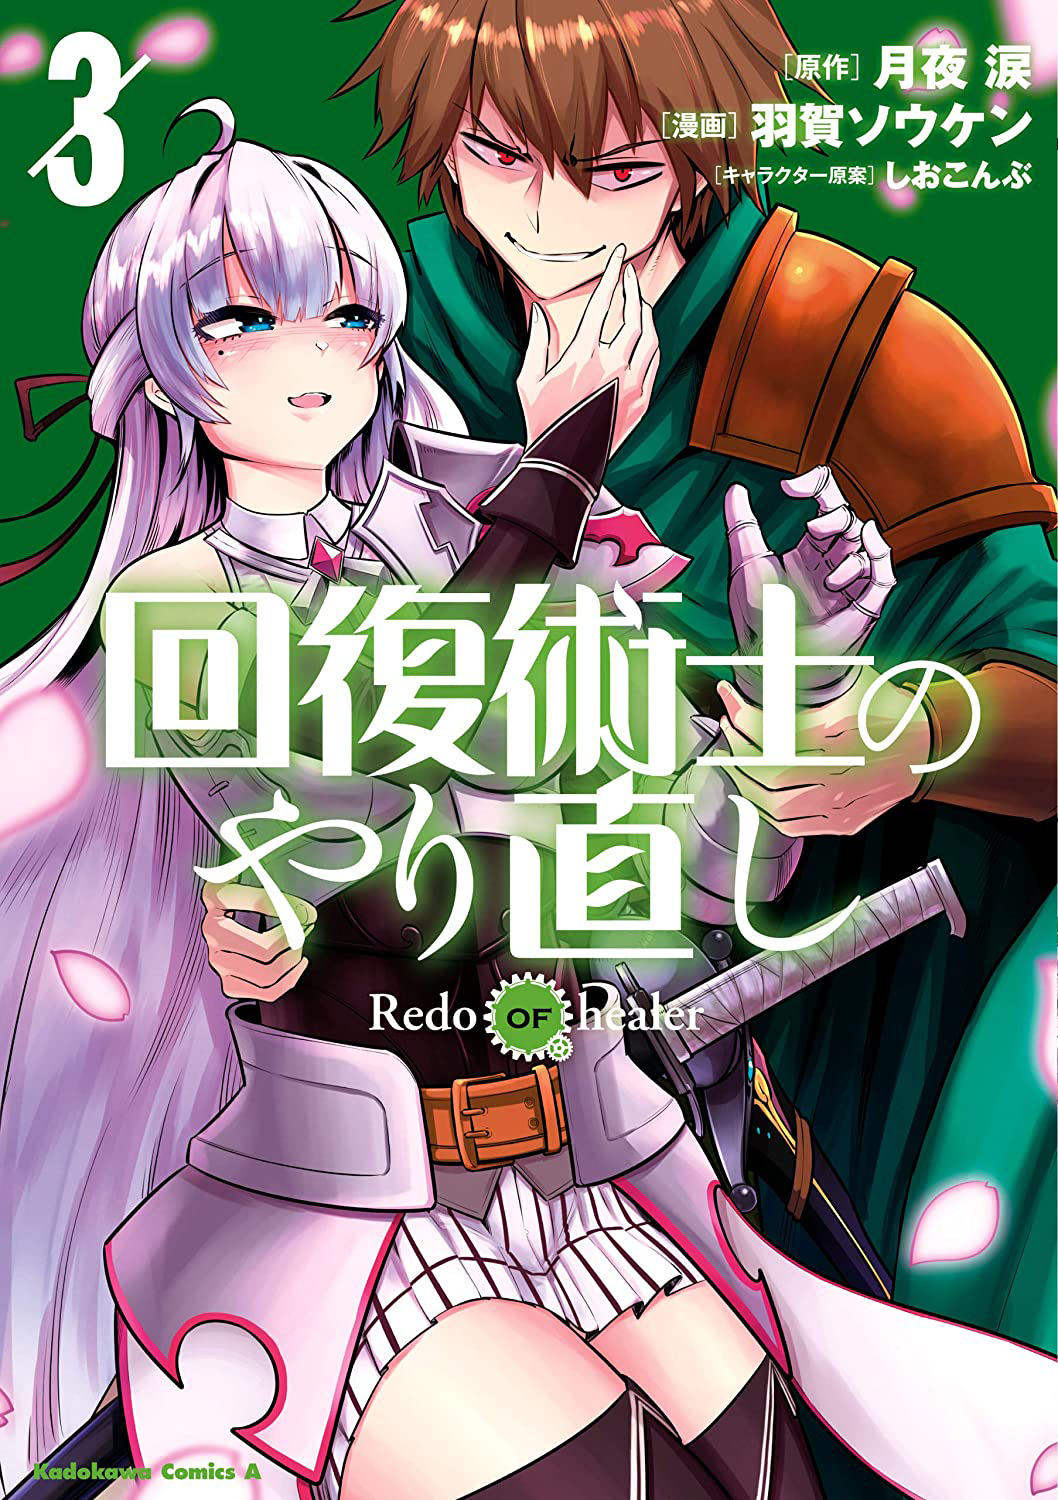 Redo Of Healer Manga